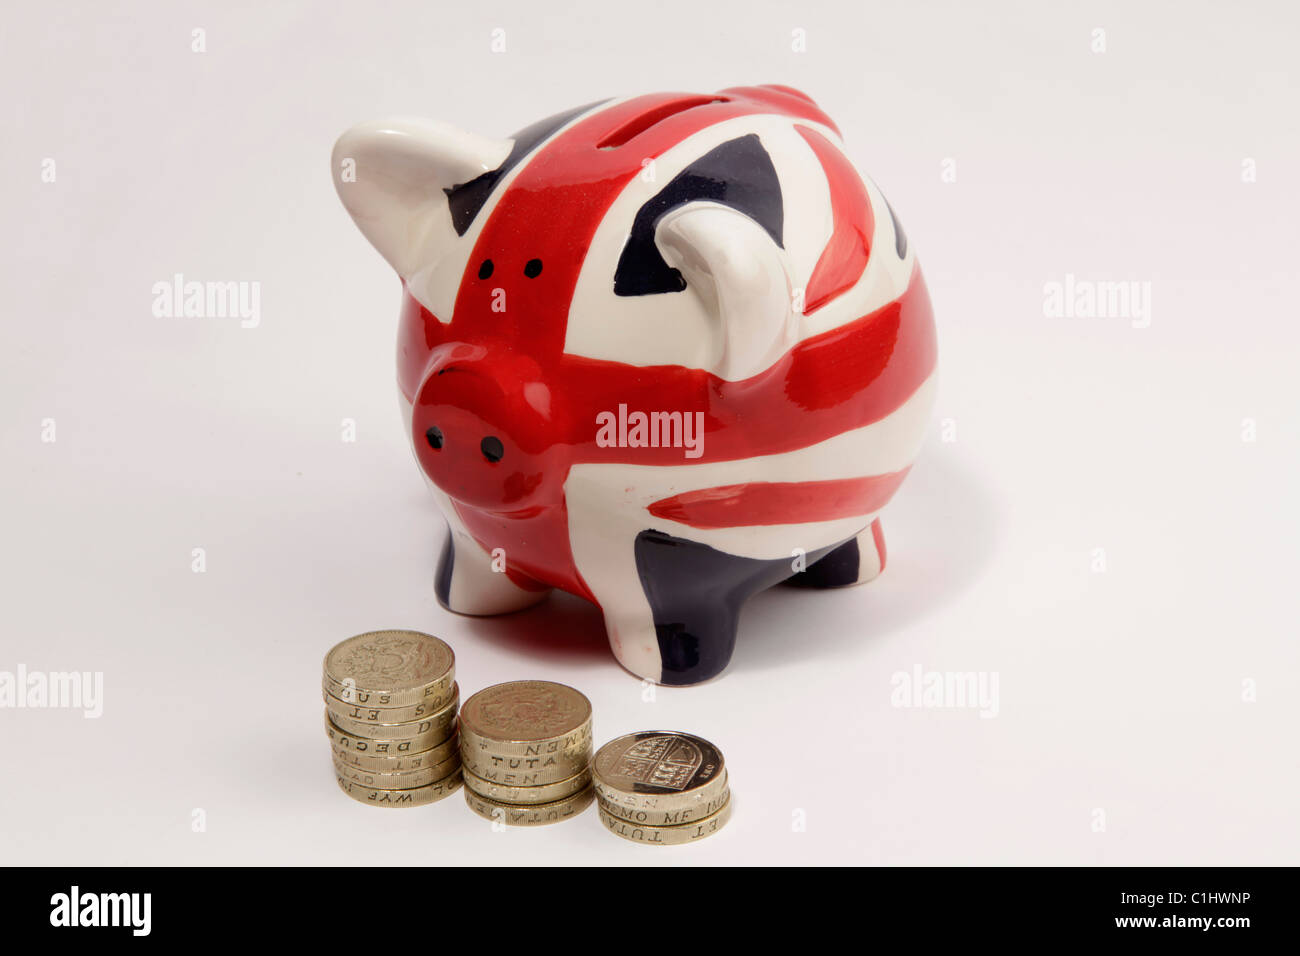 Schwein Spardose mit einem britischen "Union Jack" Flagge gemalt und einige  britische ein Pfund-Münzen vor es platziert Stockfotografie - Alamy